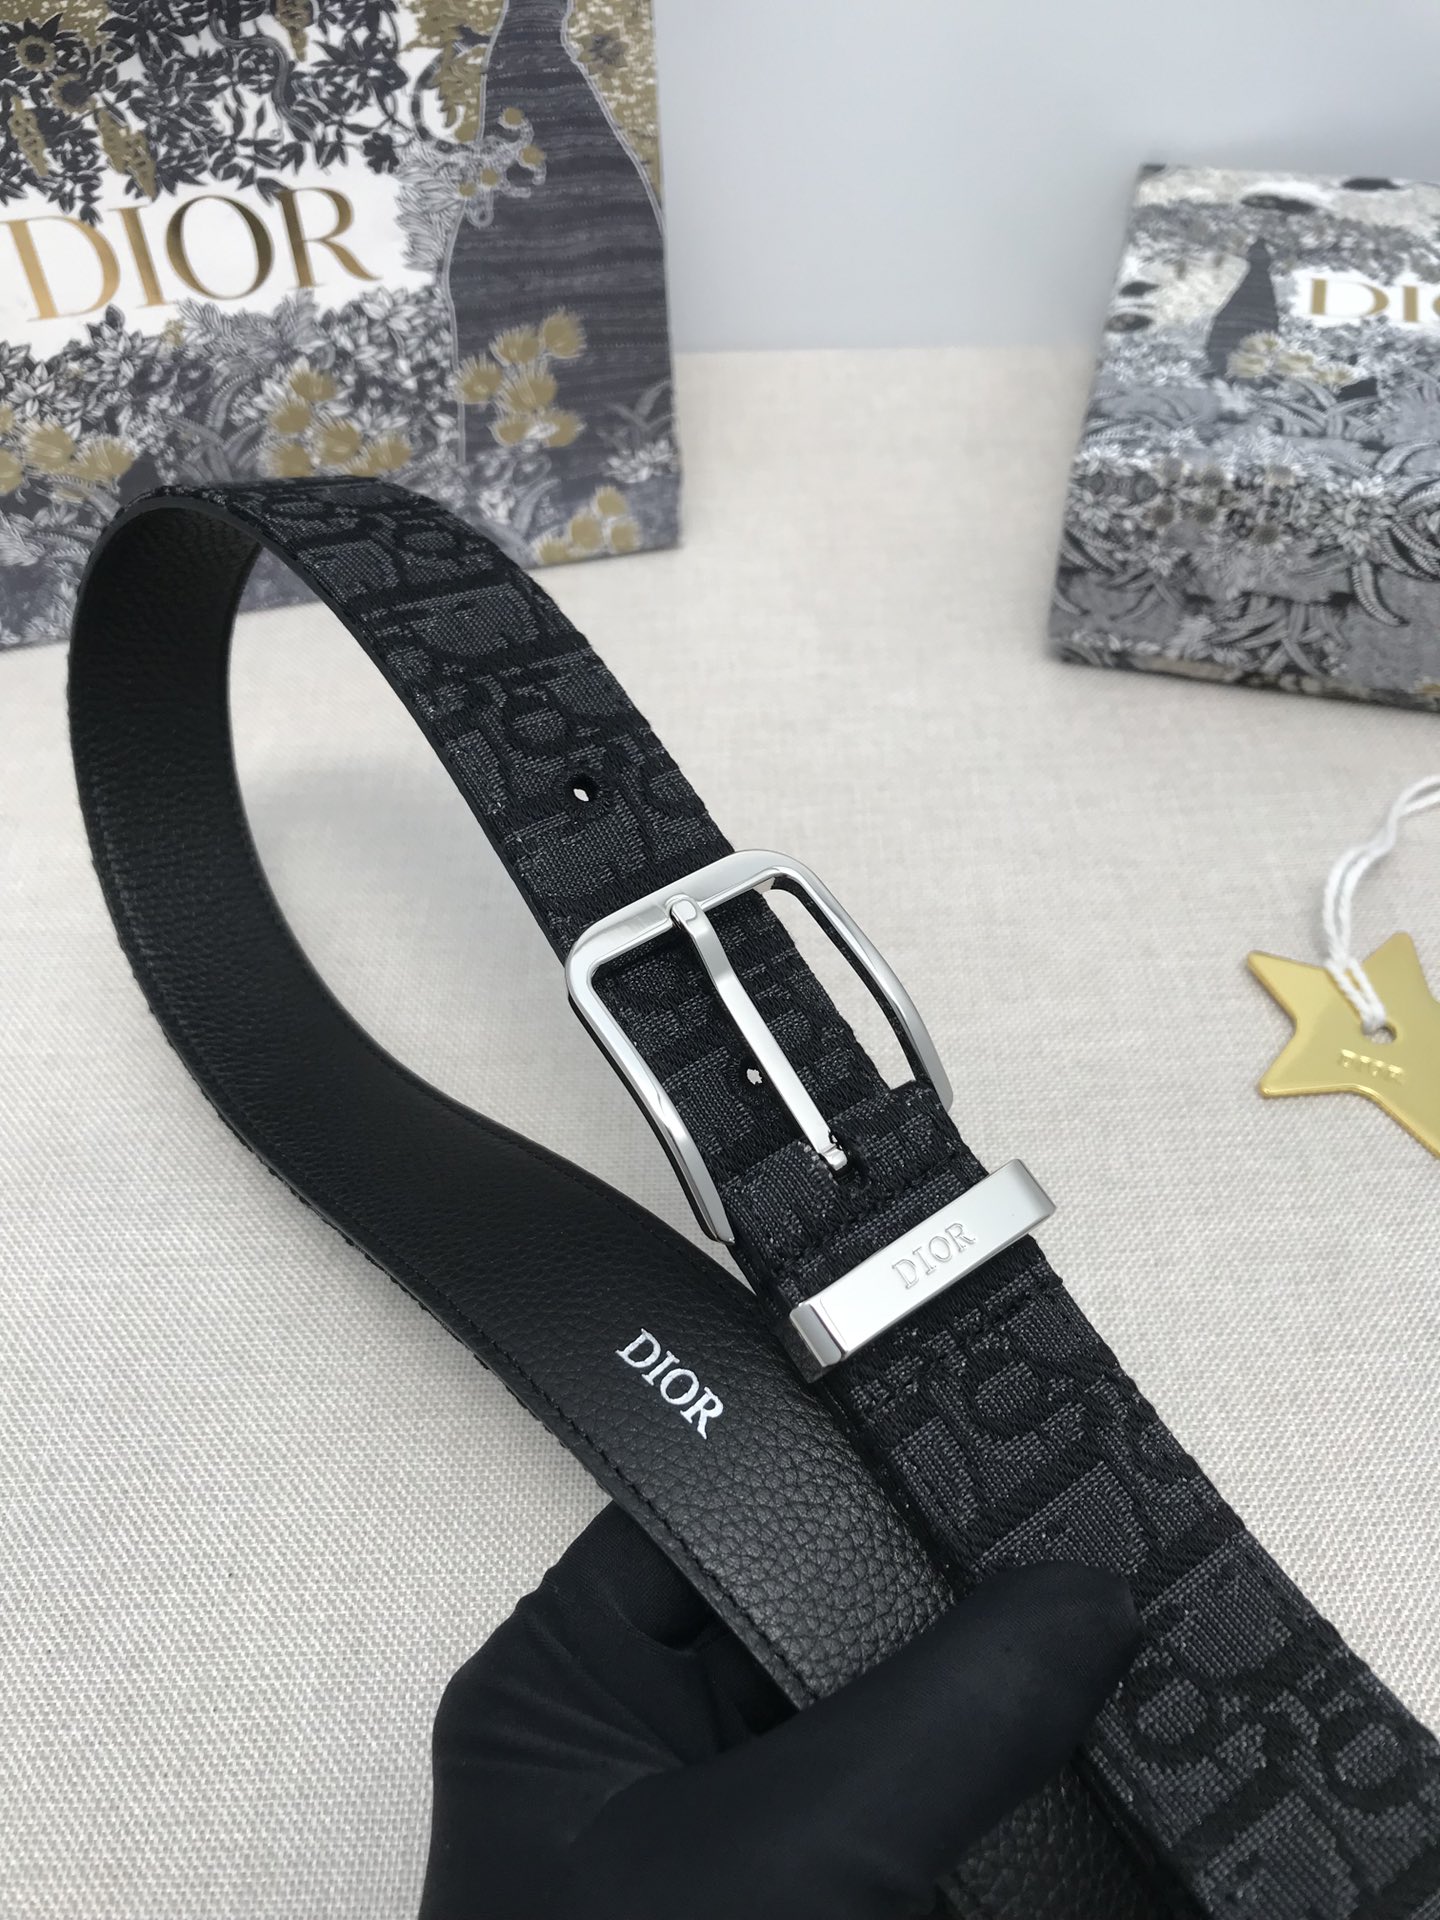 品牌迪奥这款35毫米腰带饰以米色和黑